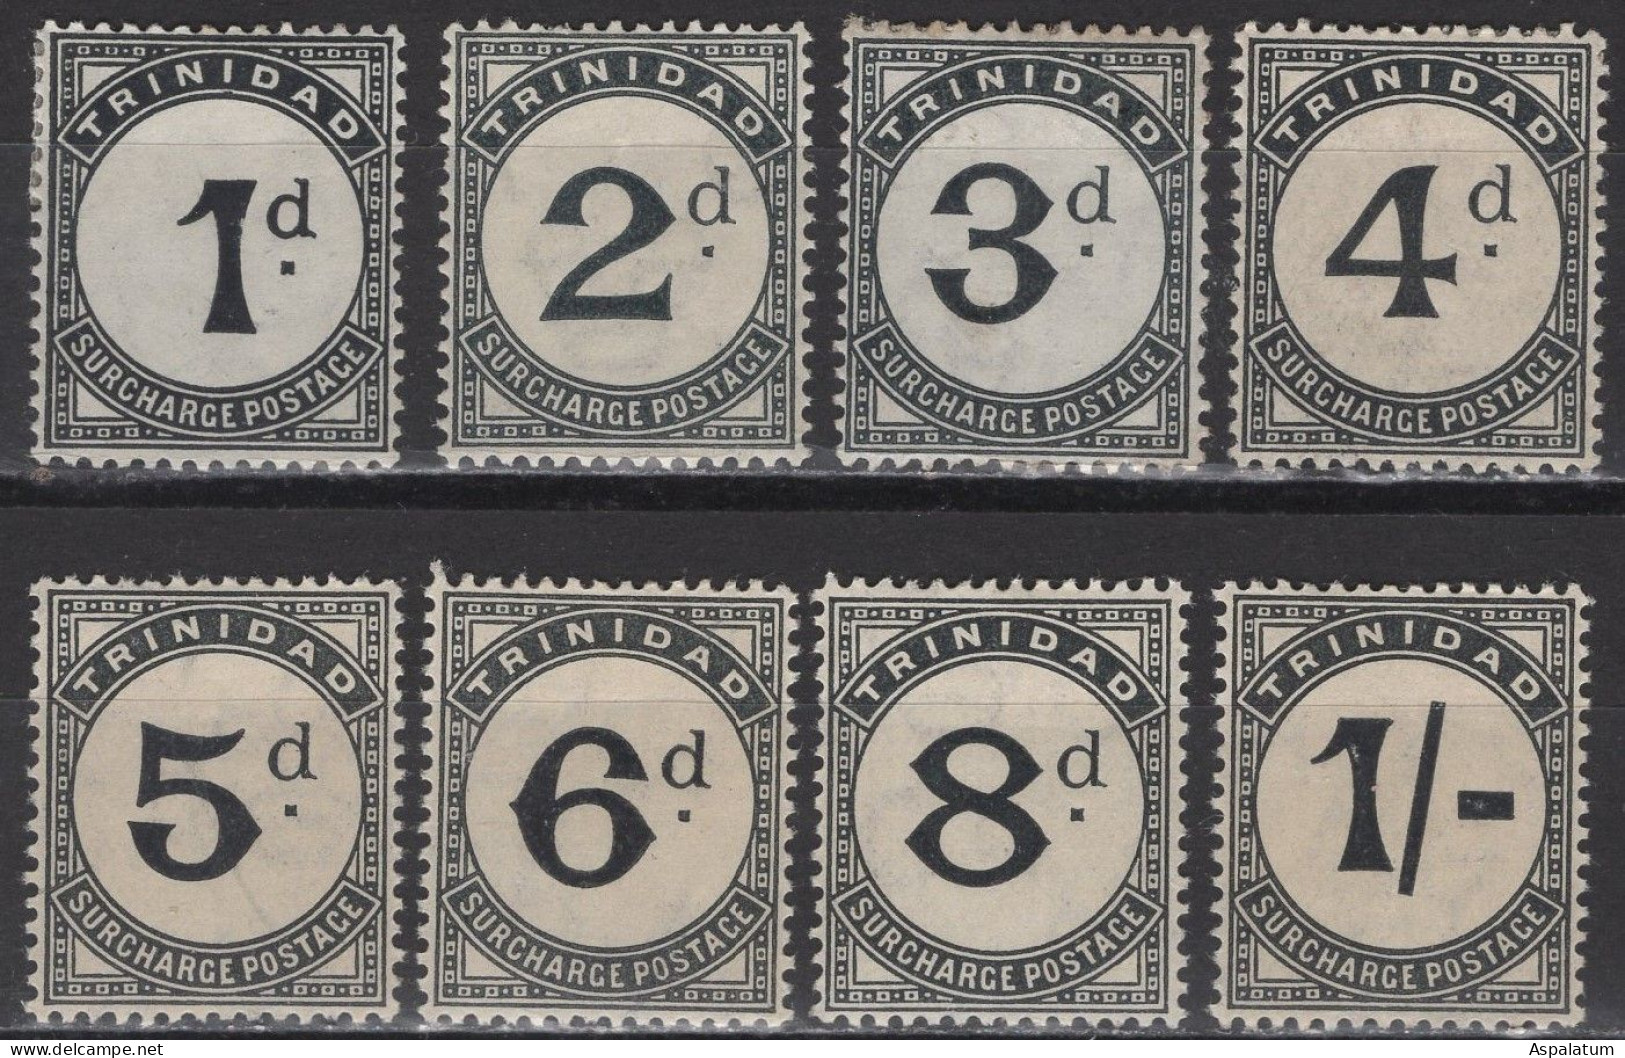 Trinidad - Postage Due - Set Of 8 - Mi 10~17 - 1906 - Trinidad En Tobago (...-1961)